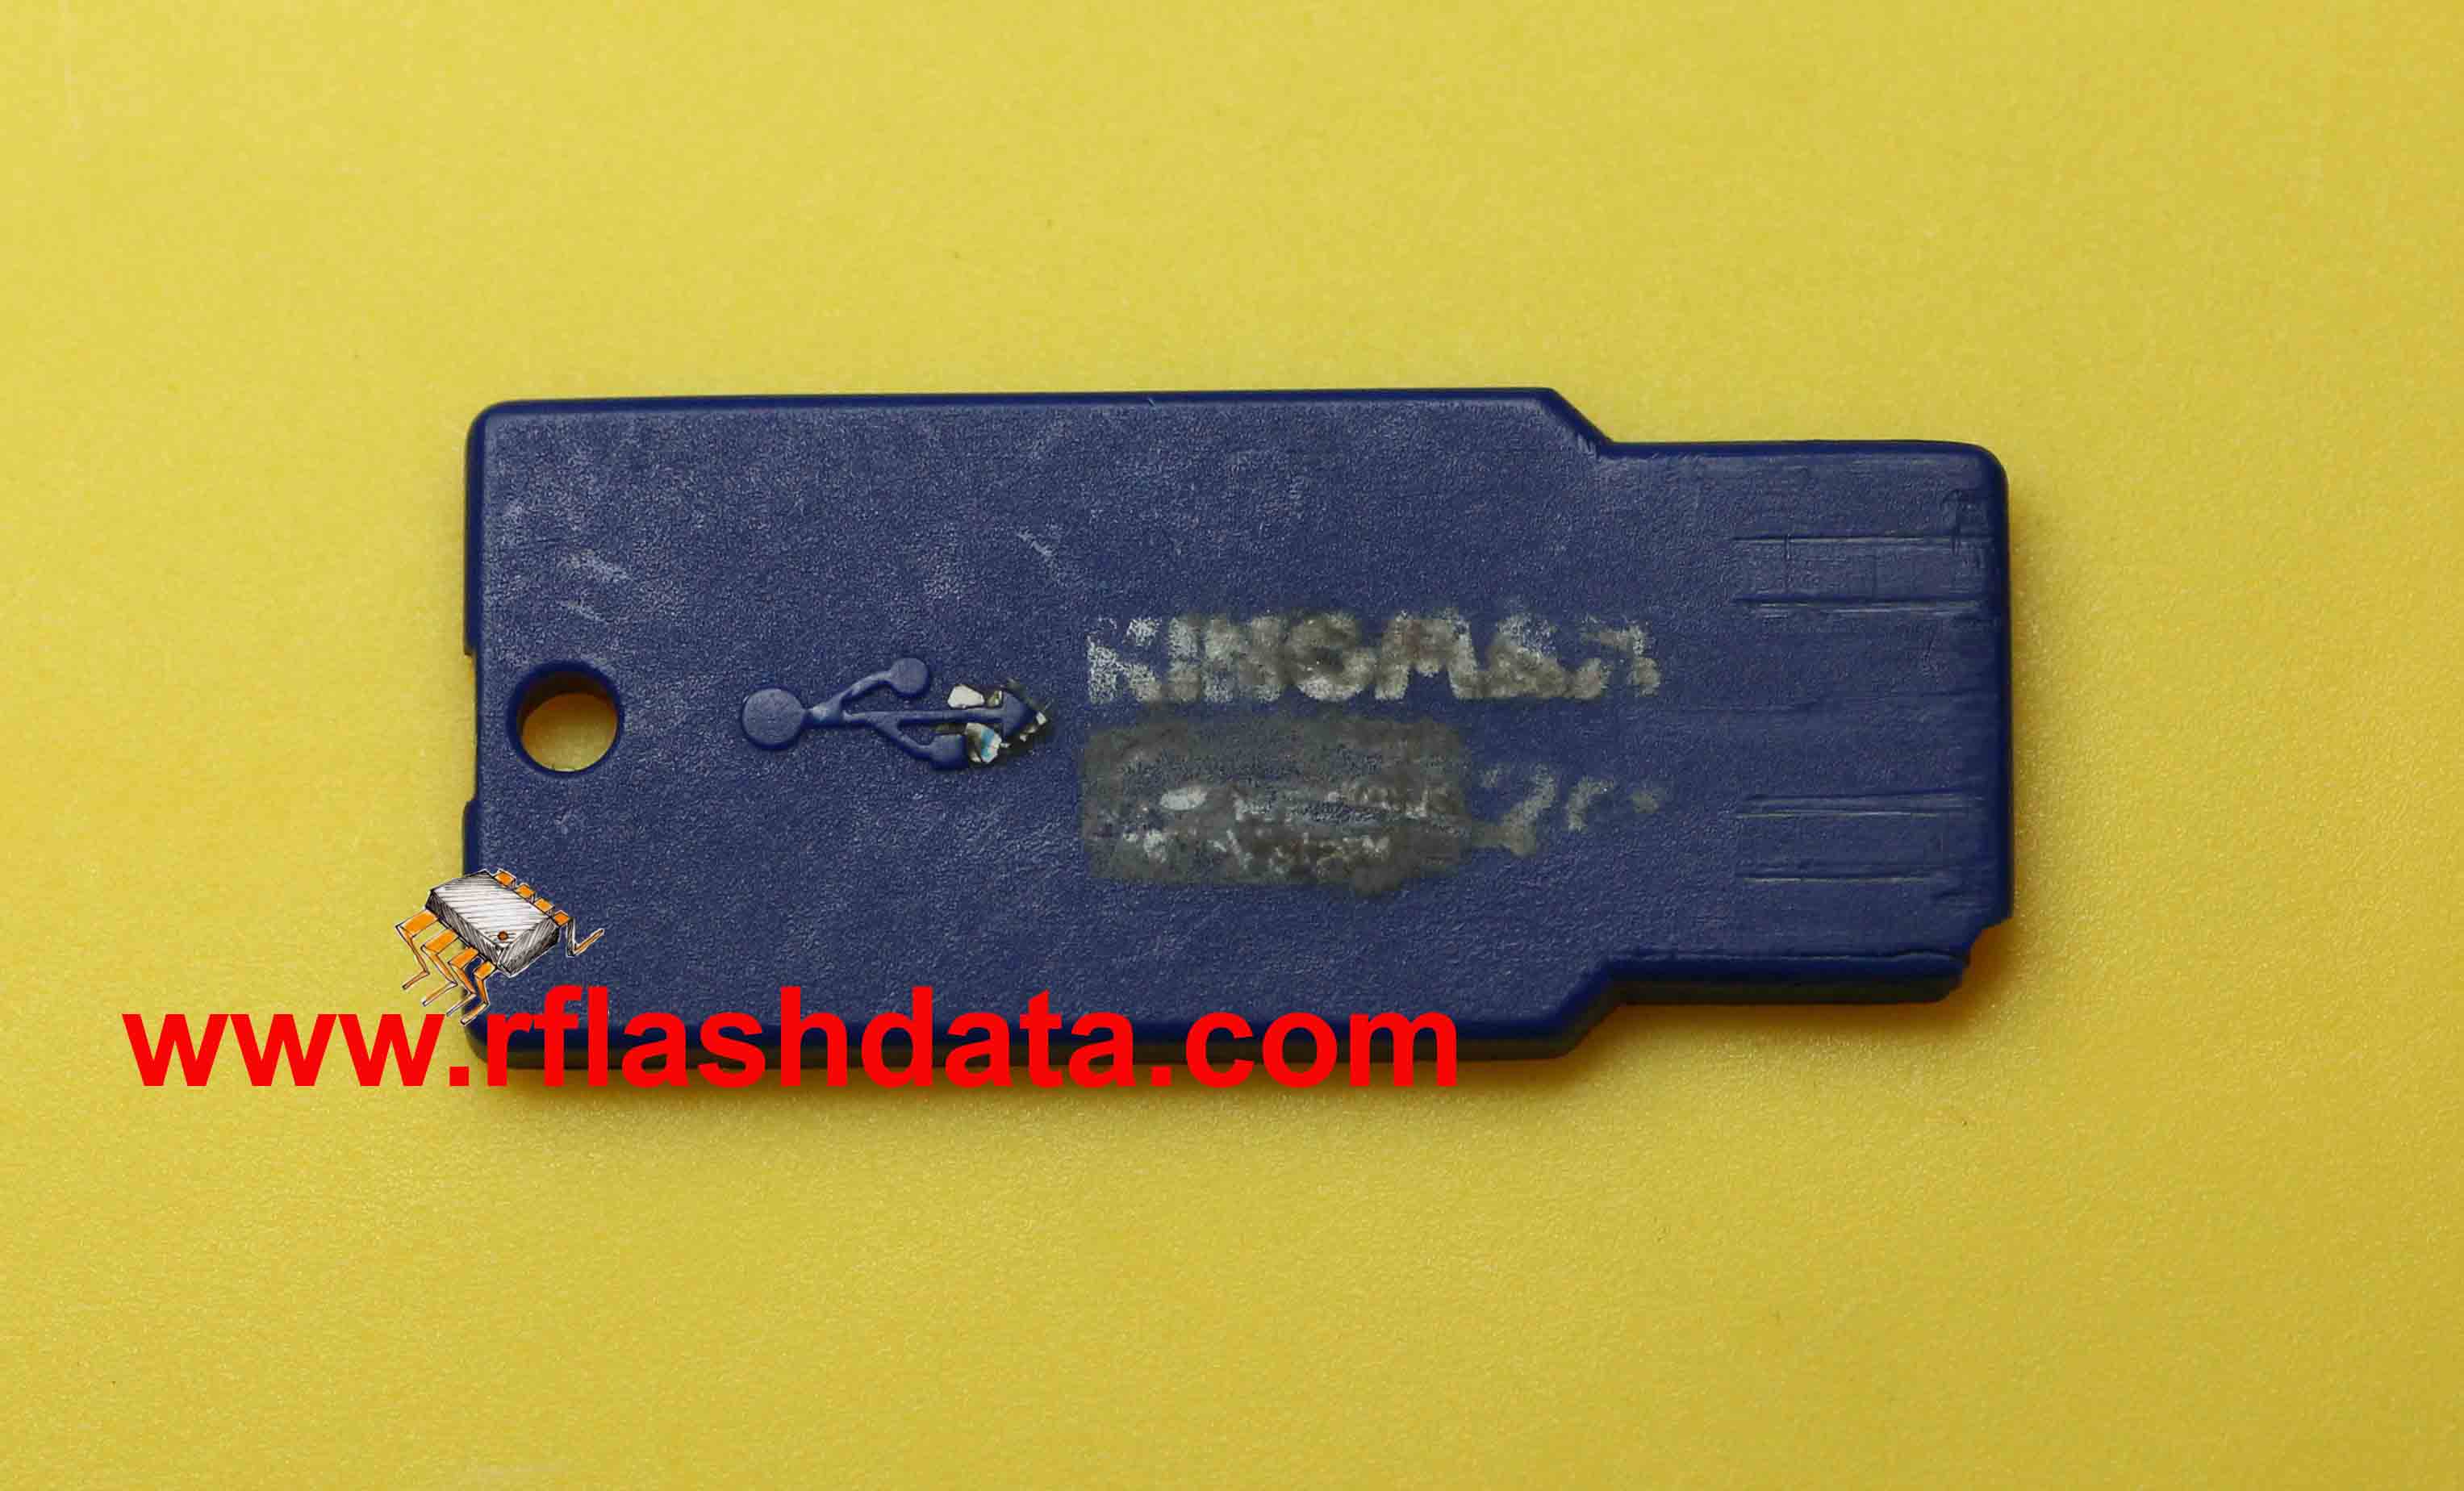 Kingmax USB flash drive